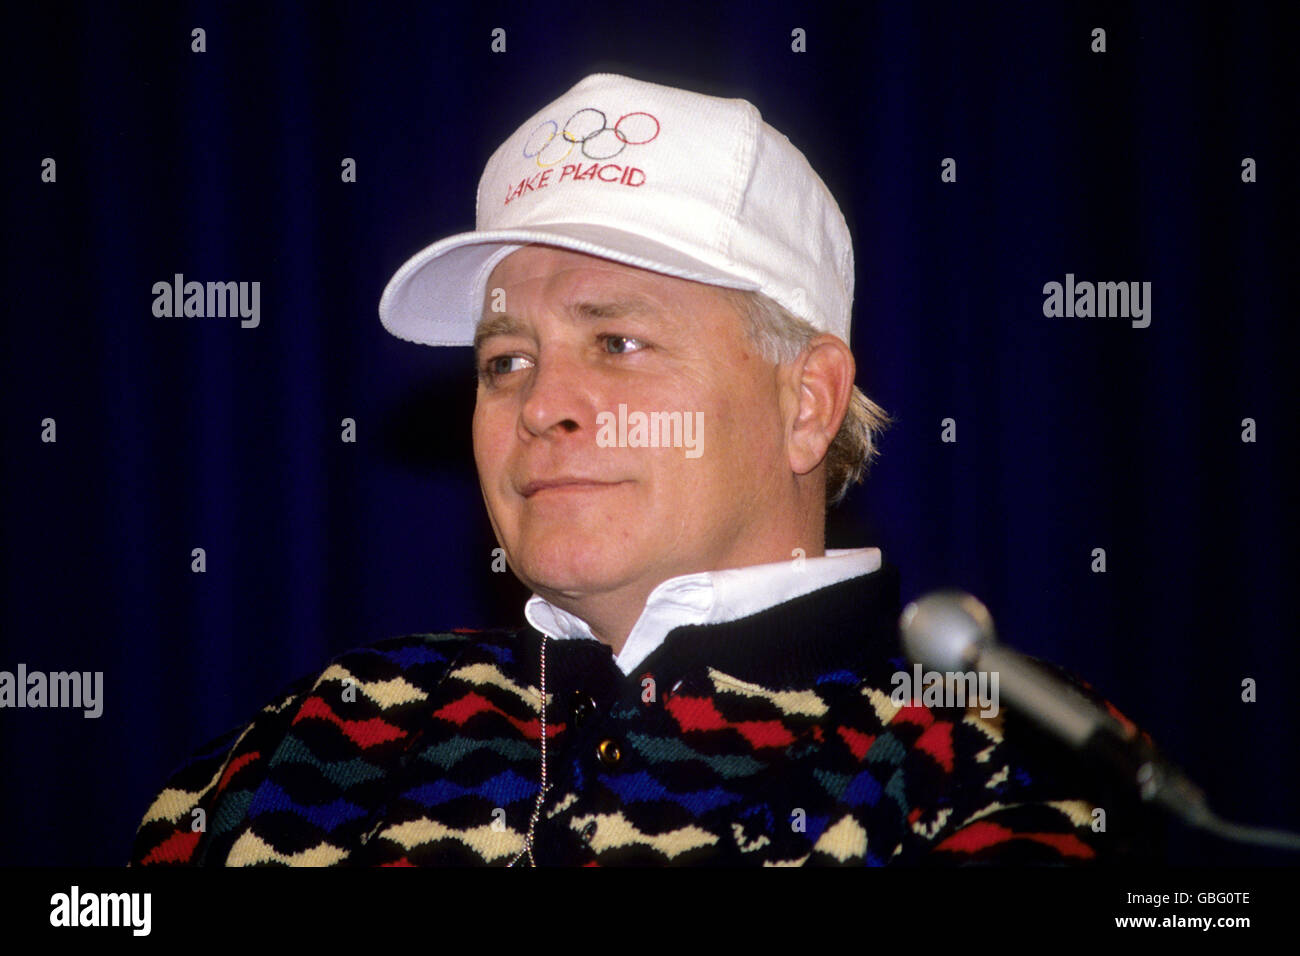 Olympische Winterspiele - Calgary 1988 - Vier-Mann-Bobsport - Jamaika. Howard Sailer, der Trainer des umstrittenen jamaikanischen Bobsled-Teams, bei einer Pressekonferenz im Olympischen Dorf in Calgary. Stockfoto